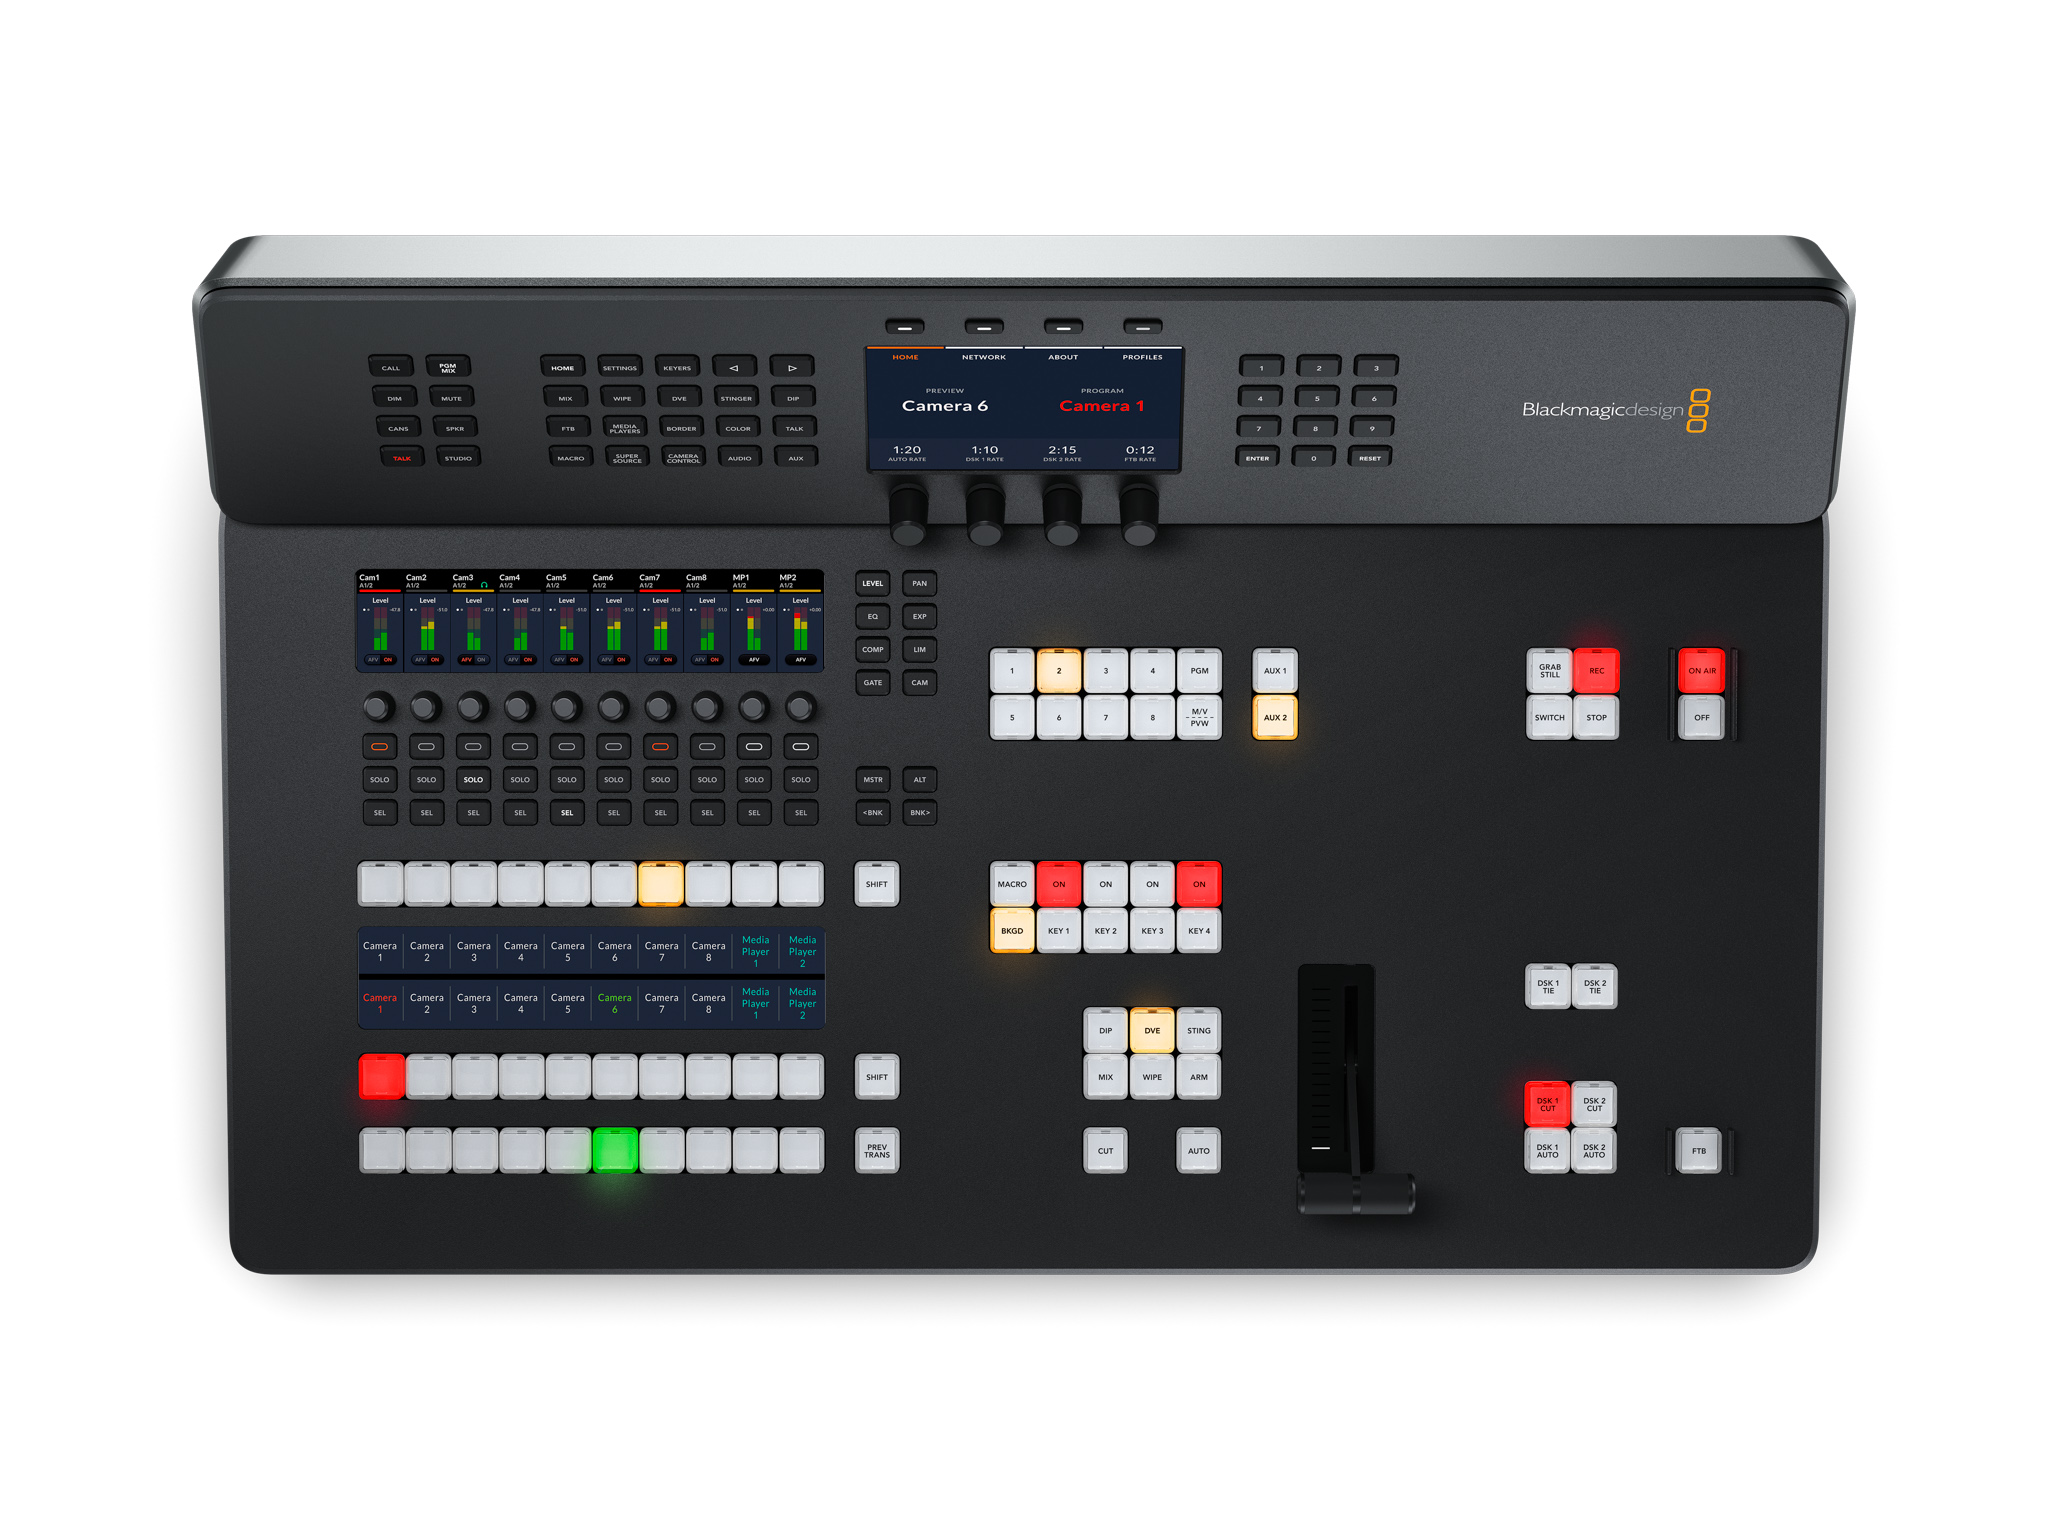 Blackmagic Design Announces New ATEM Television Studio HD8 6